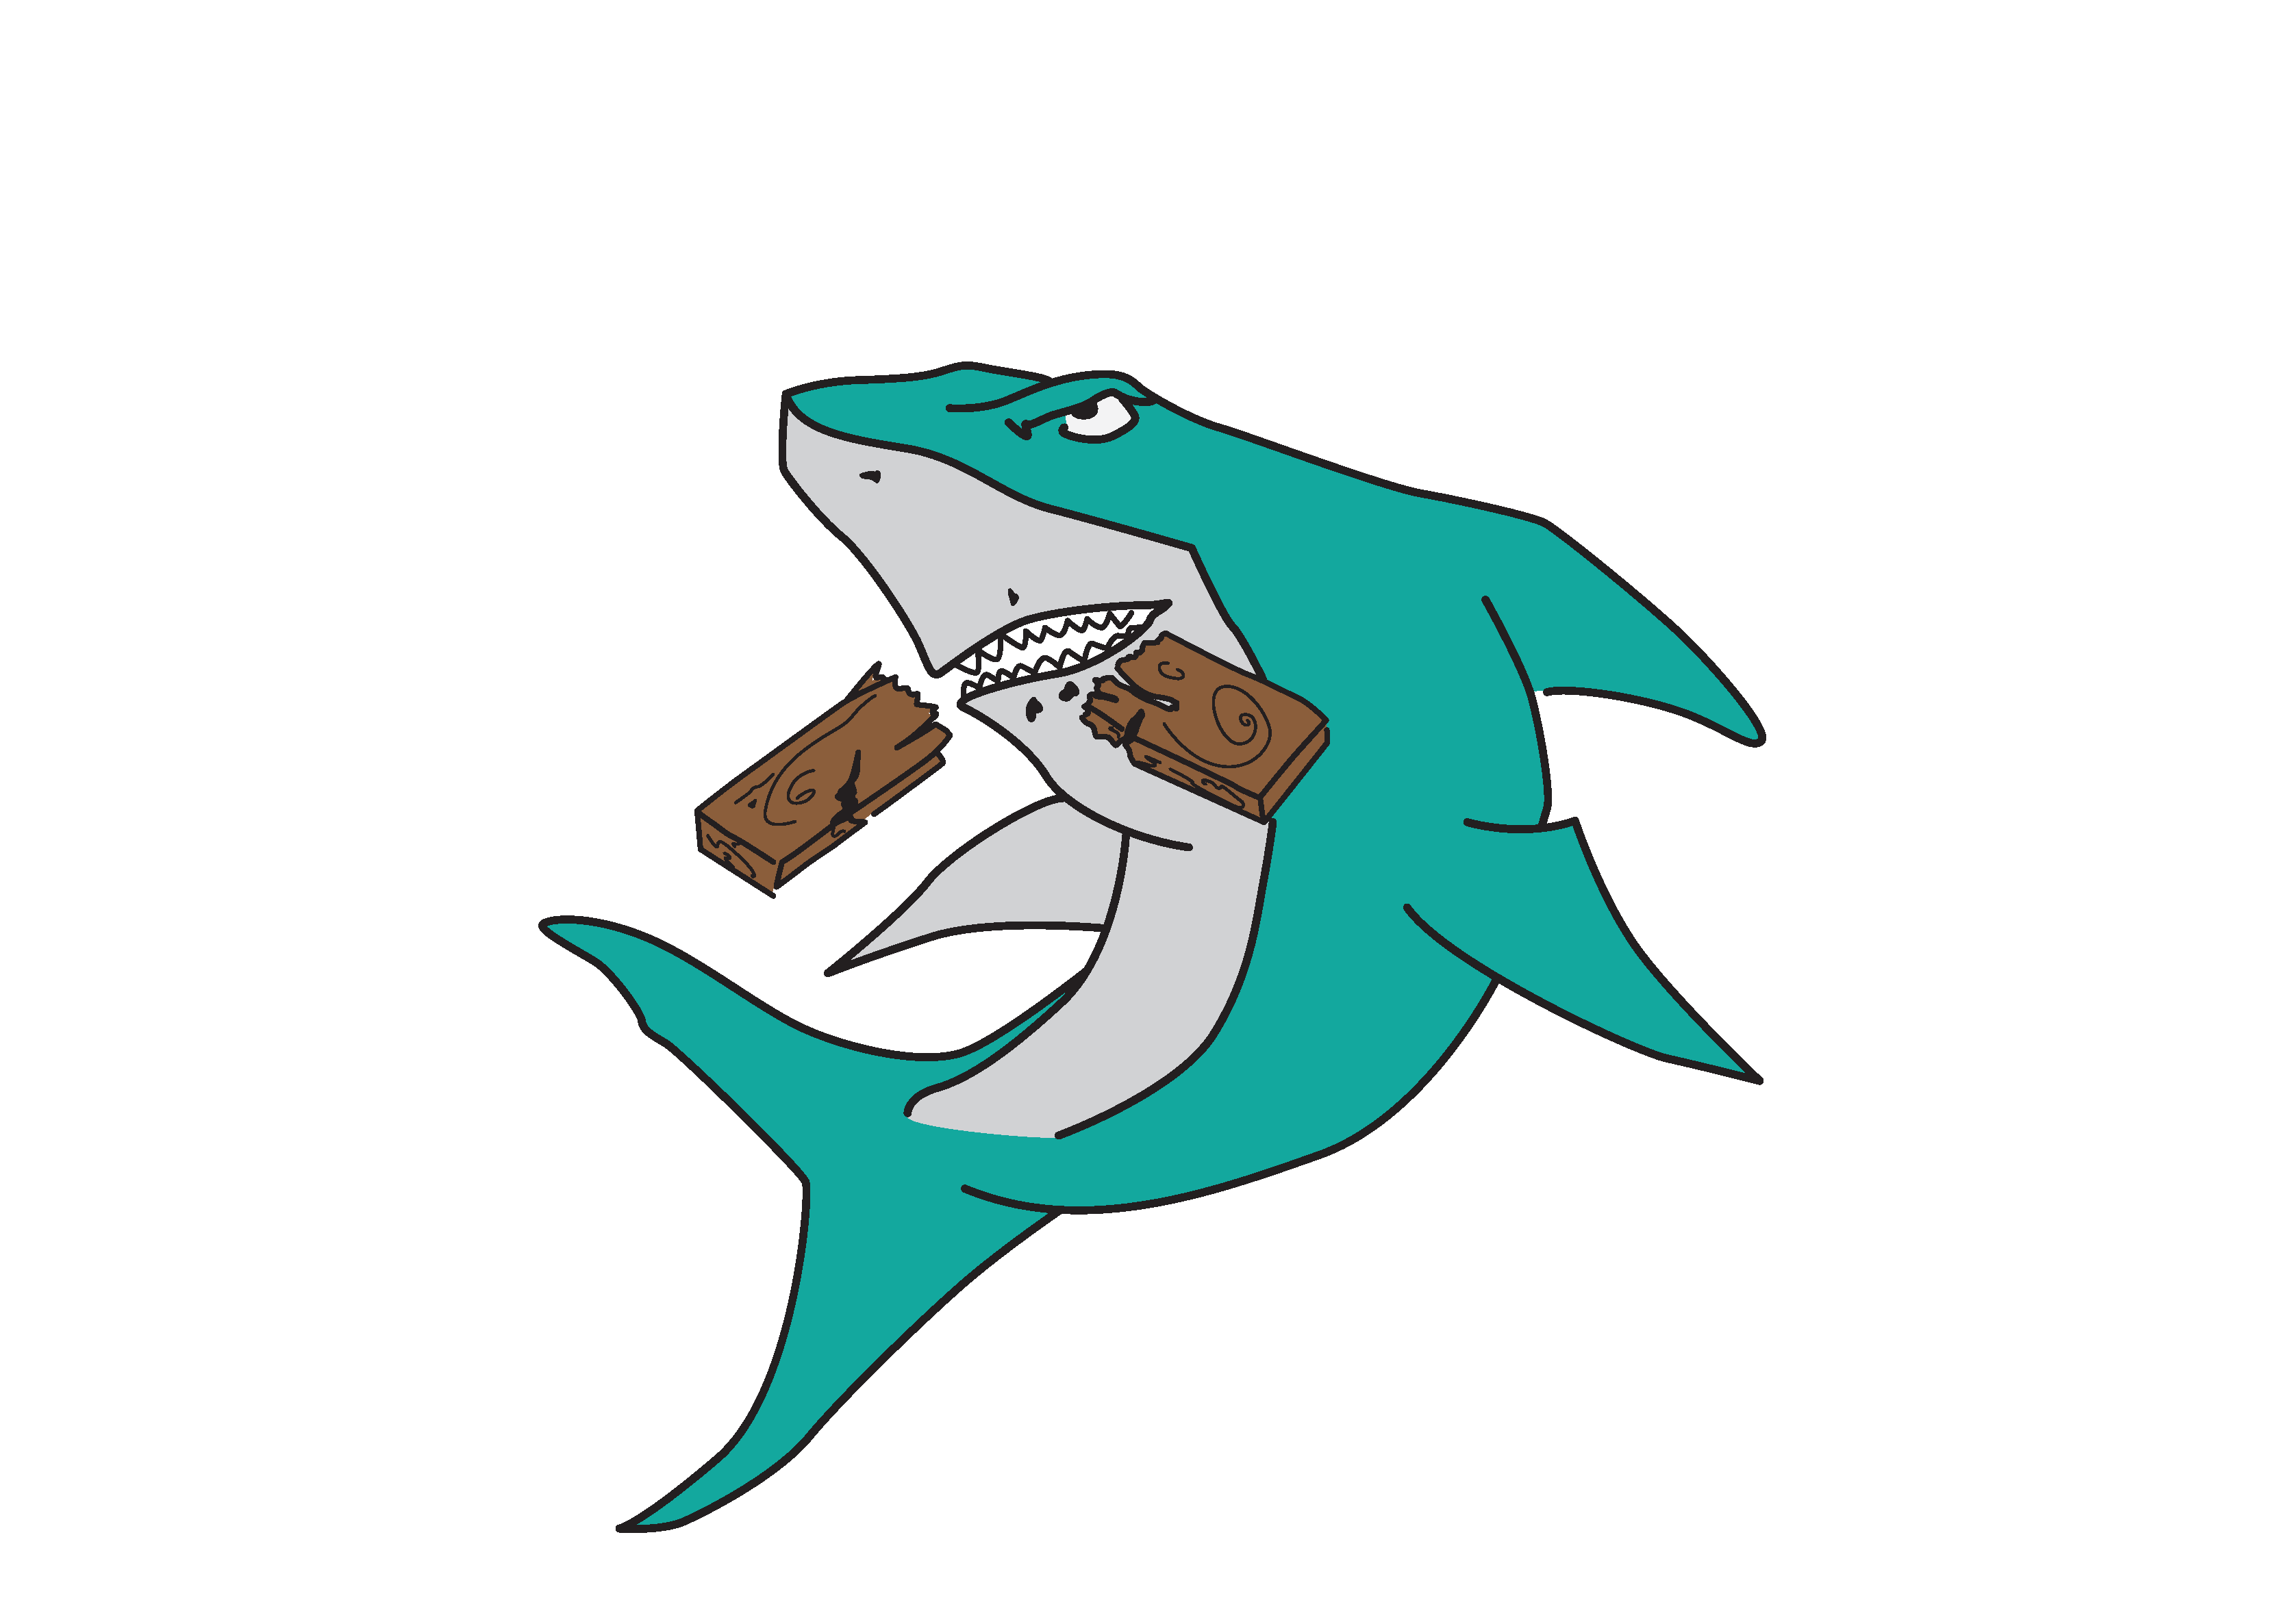 Sharks Flooring, LLC Logo